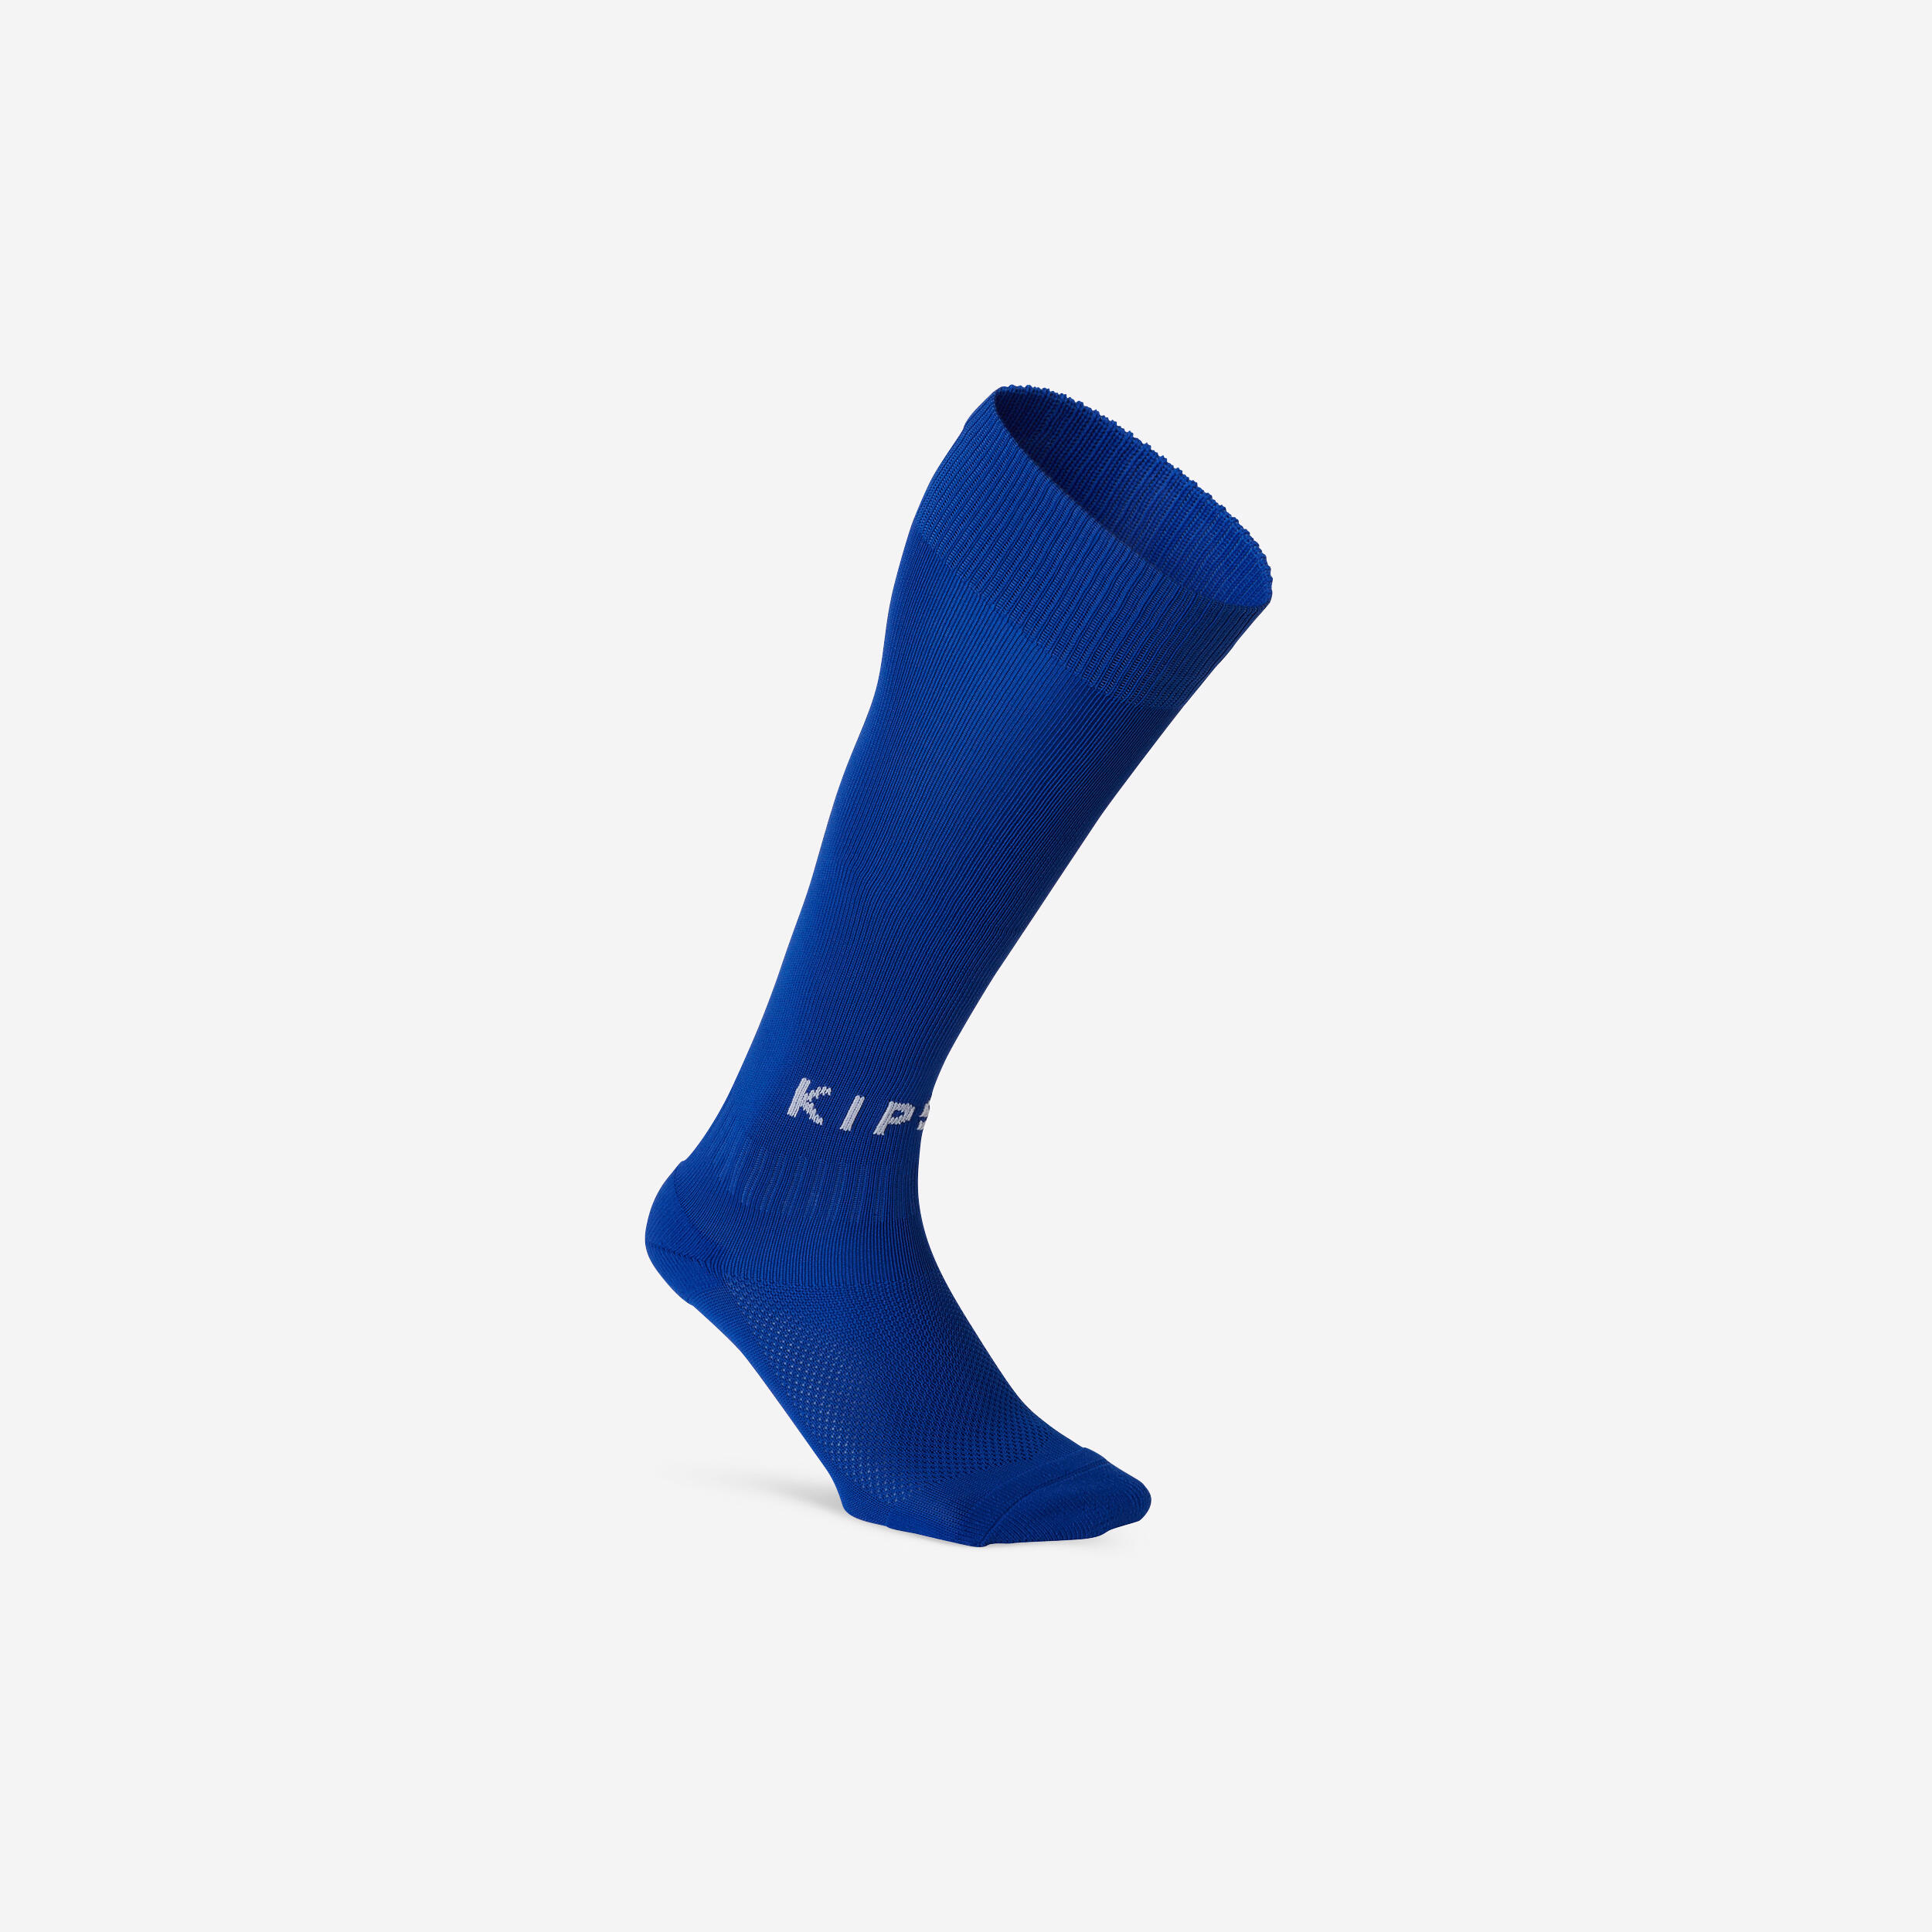 Short Grippy Football Socks Viralto MiD - Black - Decathlon